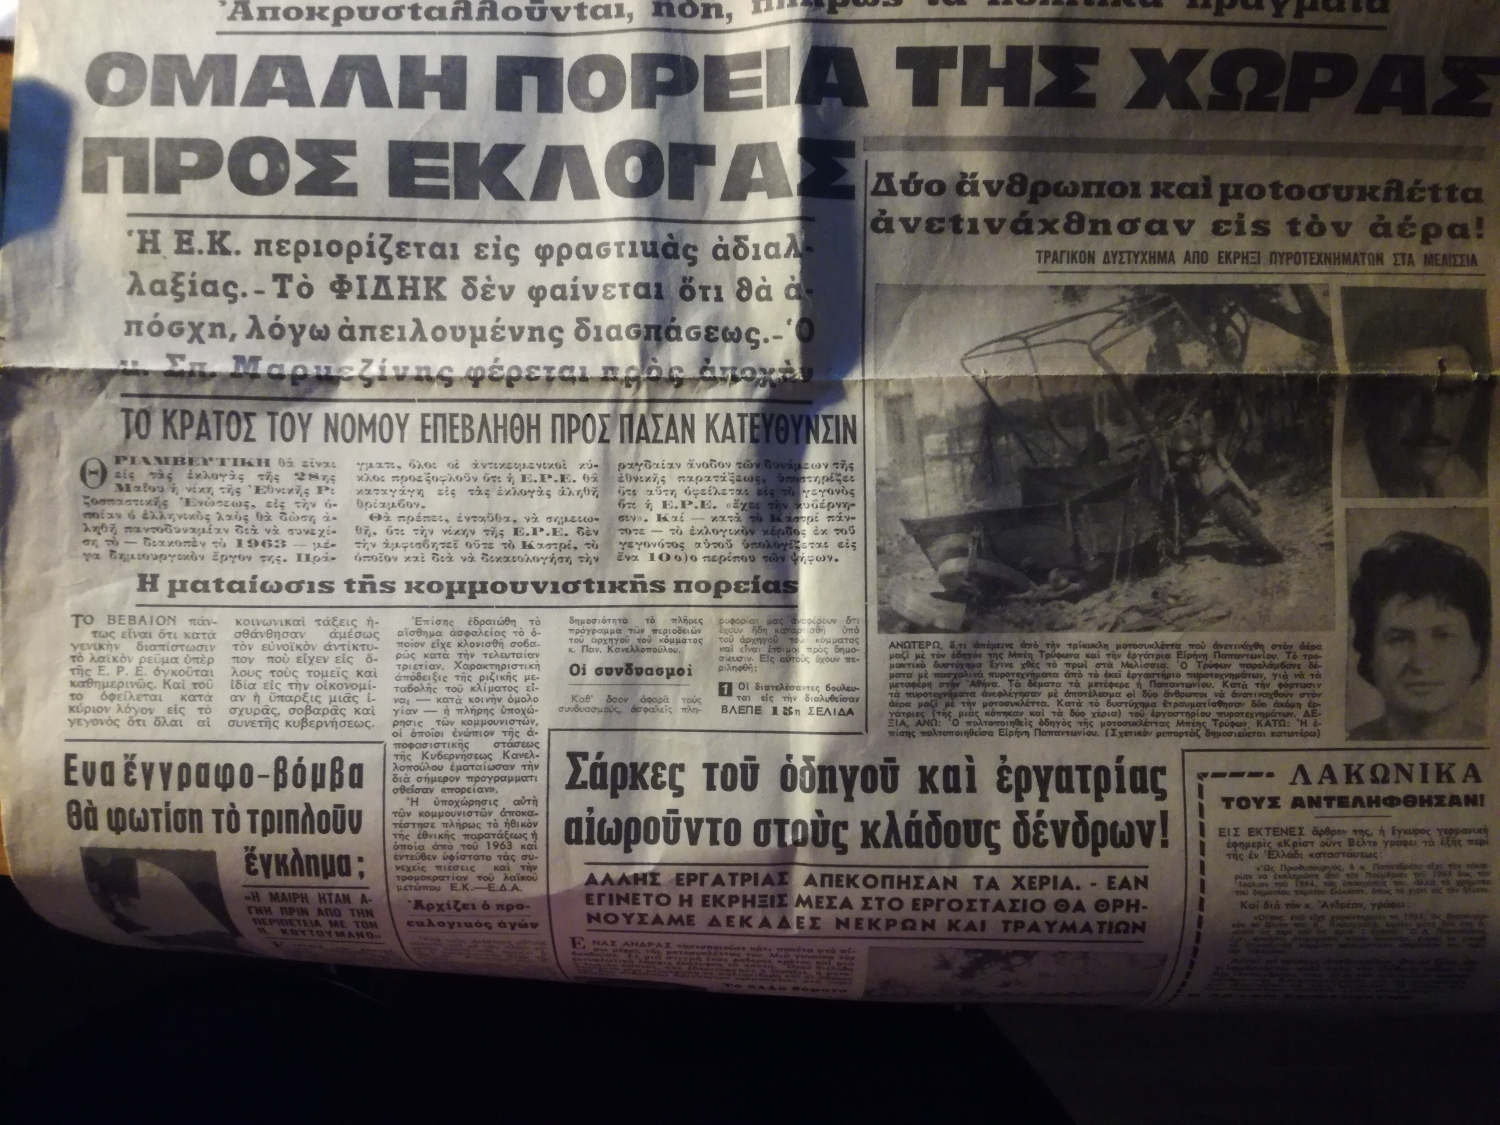 Αρθρο της εφημερίδας Ακρόπολη για τις εκλογές της 28ης Μαΐου 1967, οι οποίες ποτέ δεν έγιναν, λόγω του πραξικοπήματος των στρατιωτικών